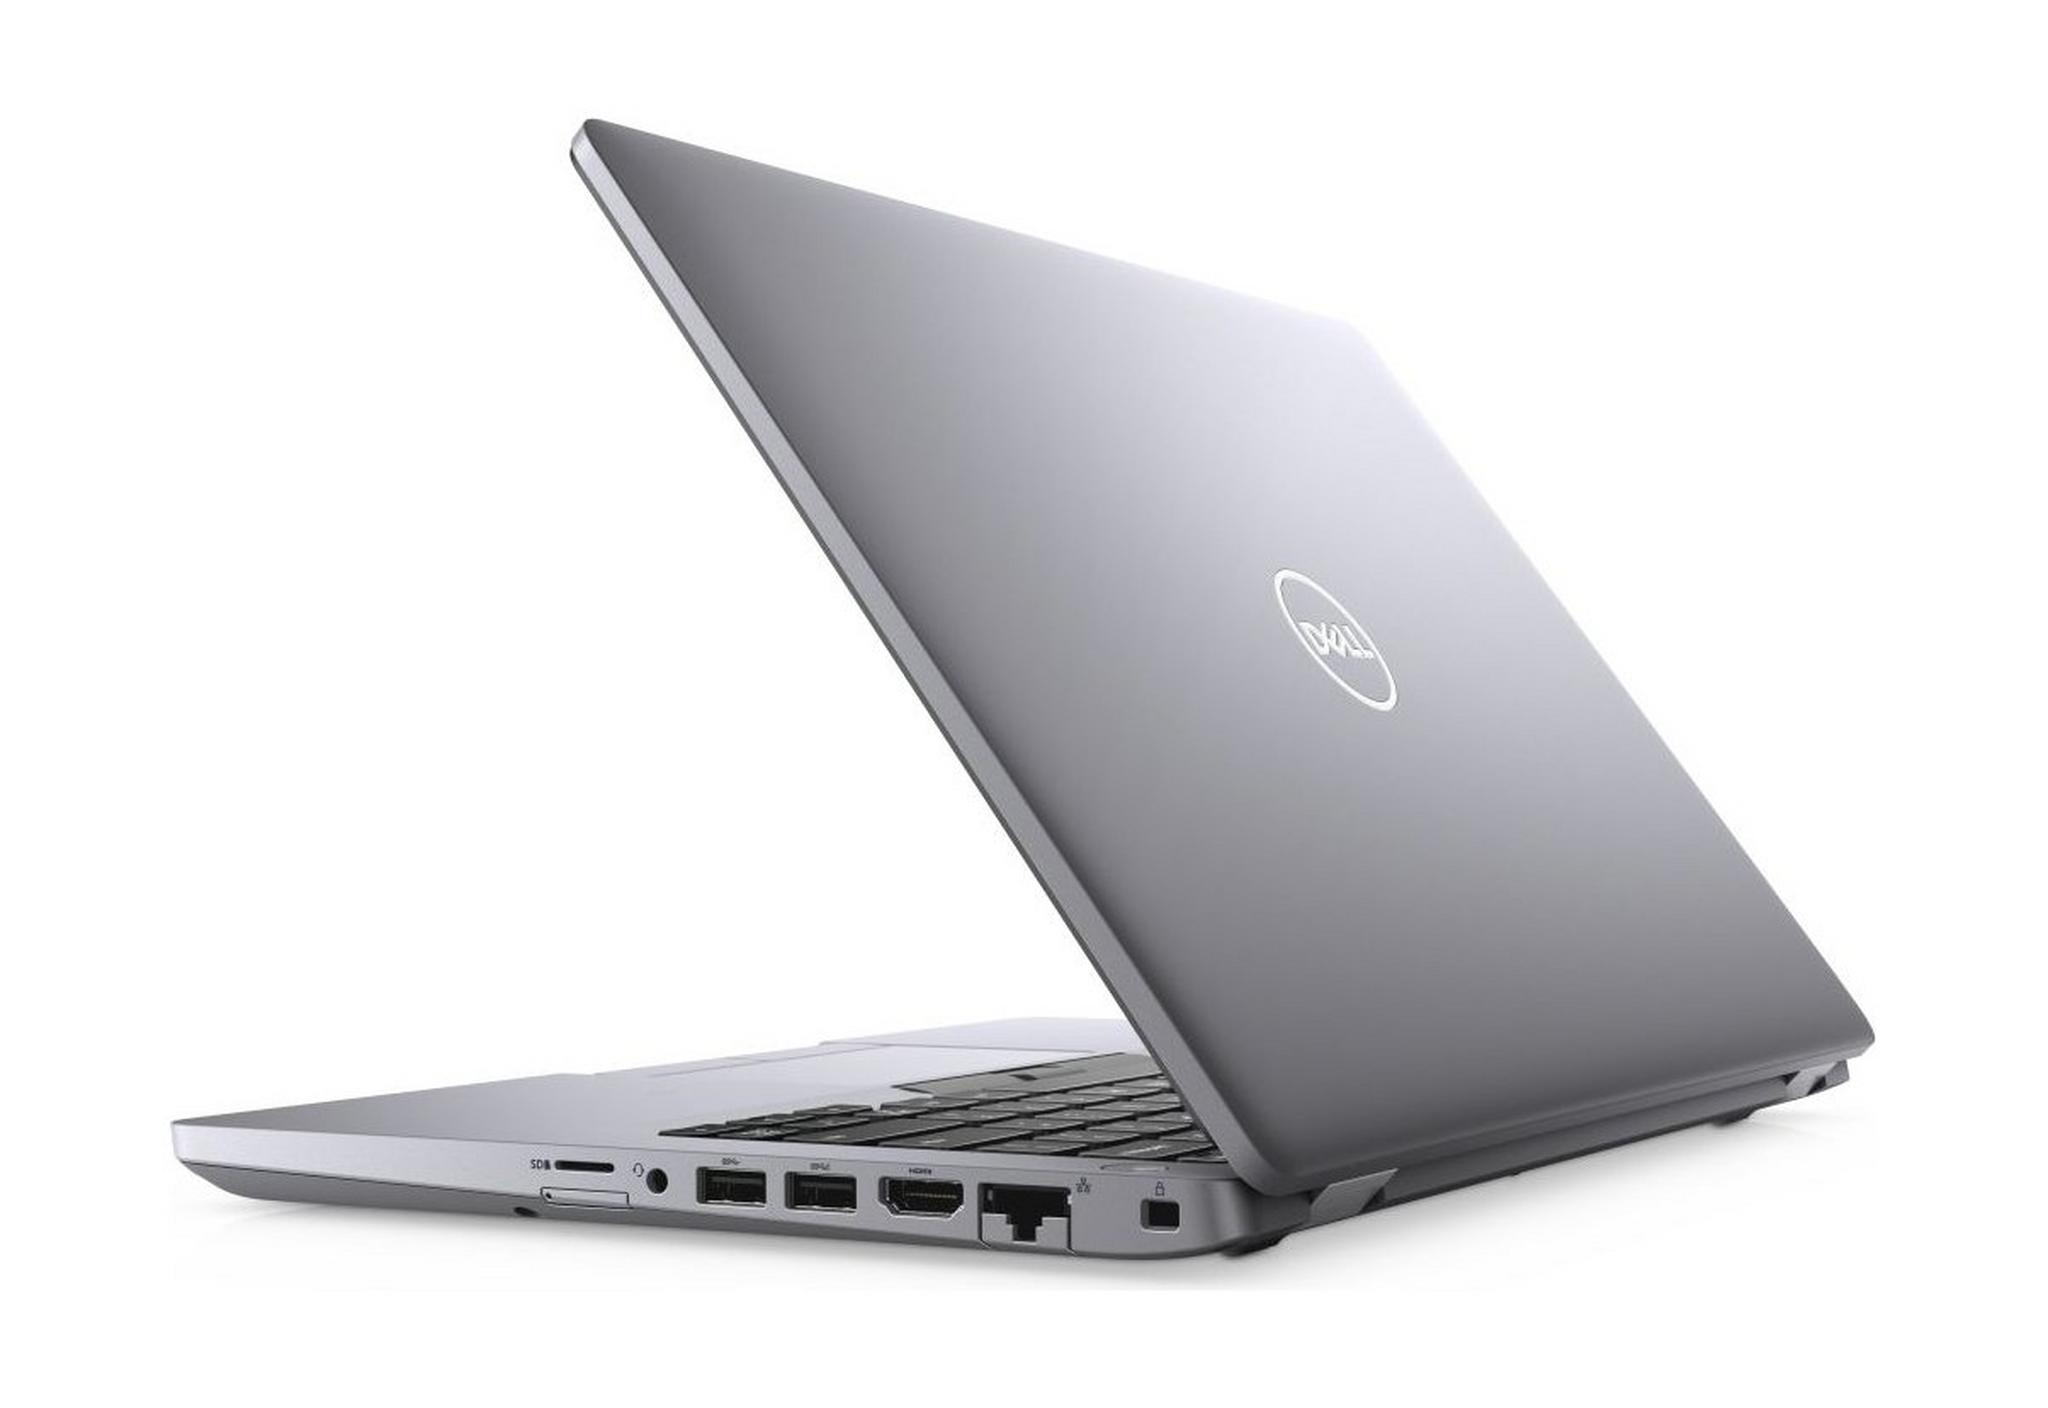 Dell Latitude Core i5 16GB RAM 512GB SSD 15.6-inch Business Laptop - Silver